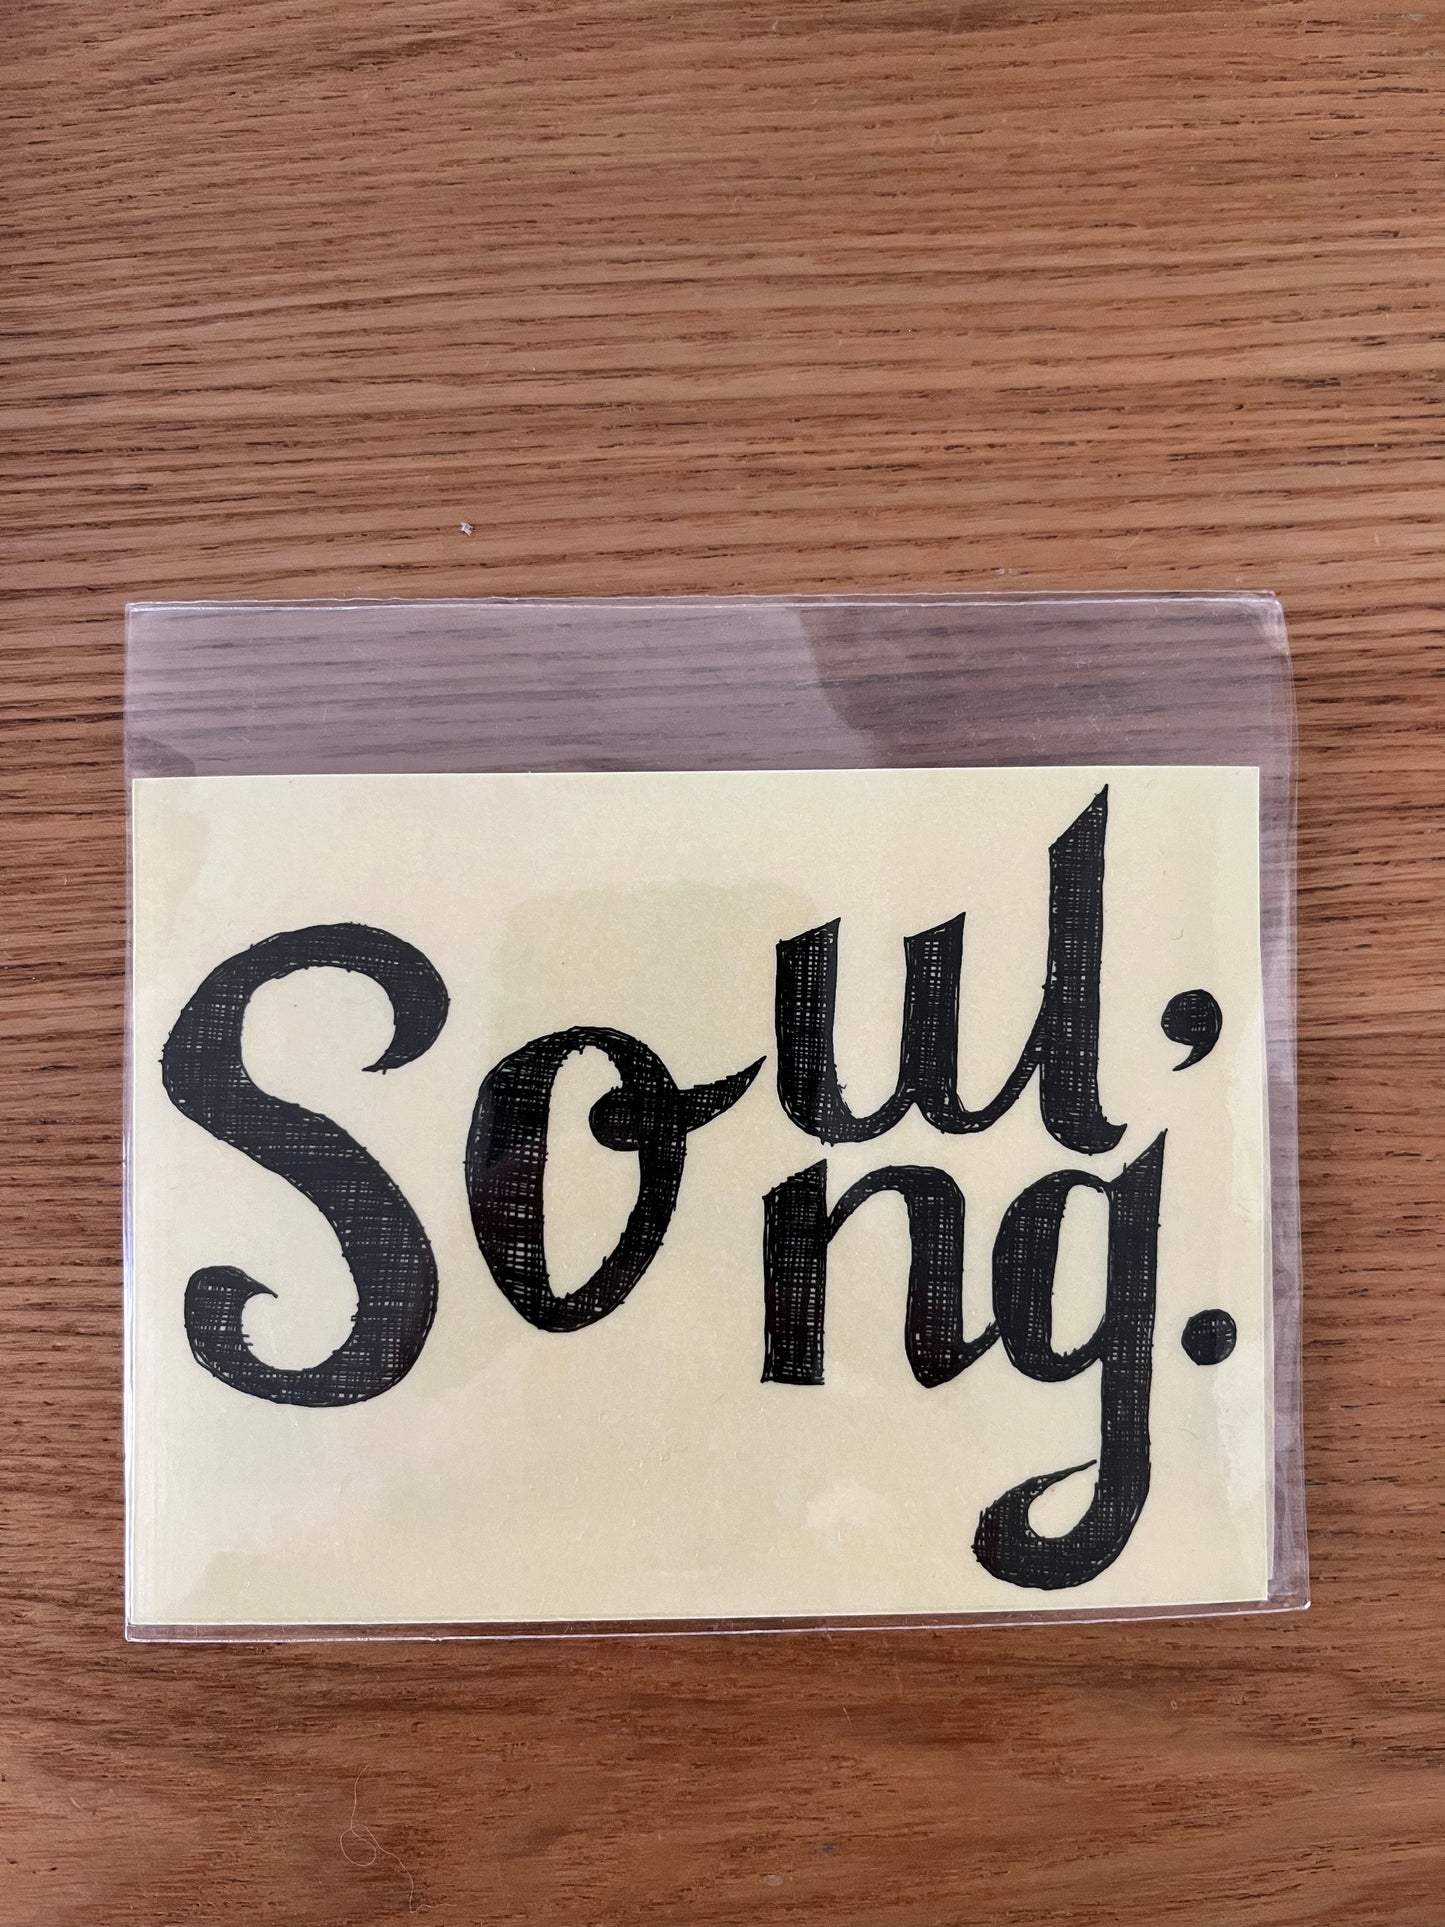 透明防水贴纸 Soul/Song  Transparent waterproof sticker Soul/Song  透明防水貼紙 Soul/Song